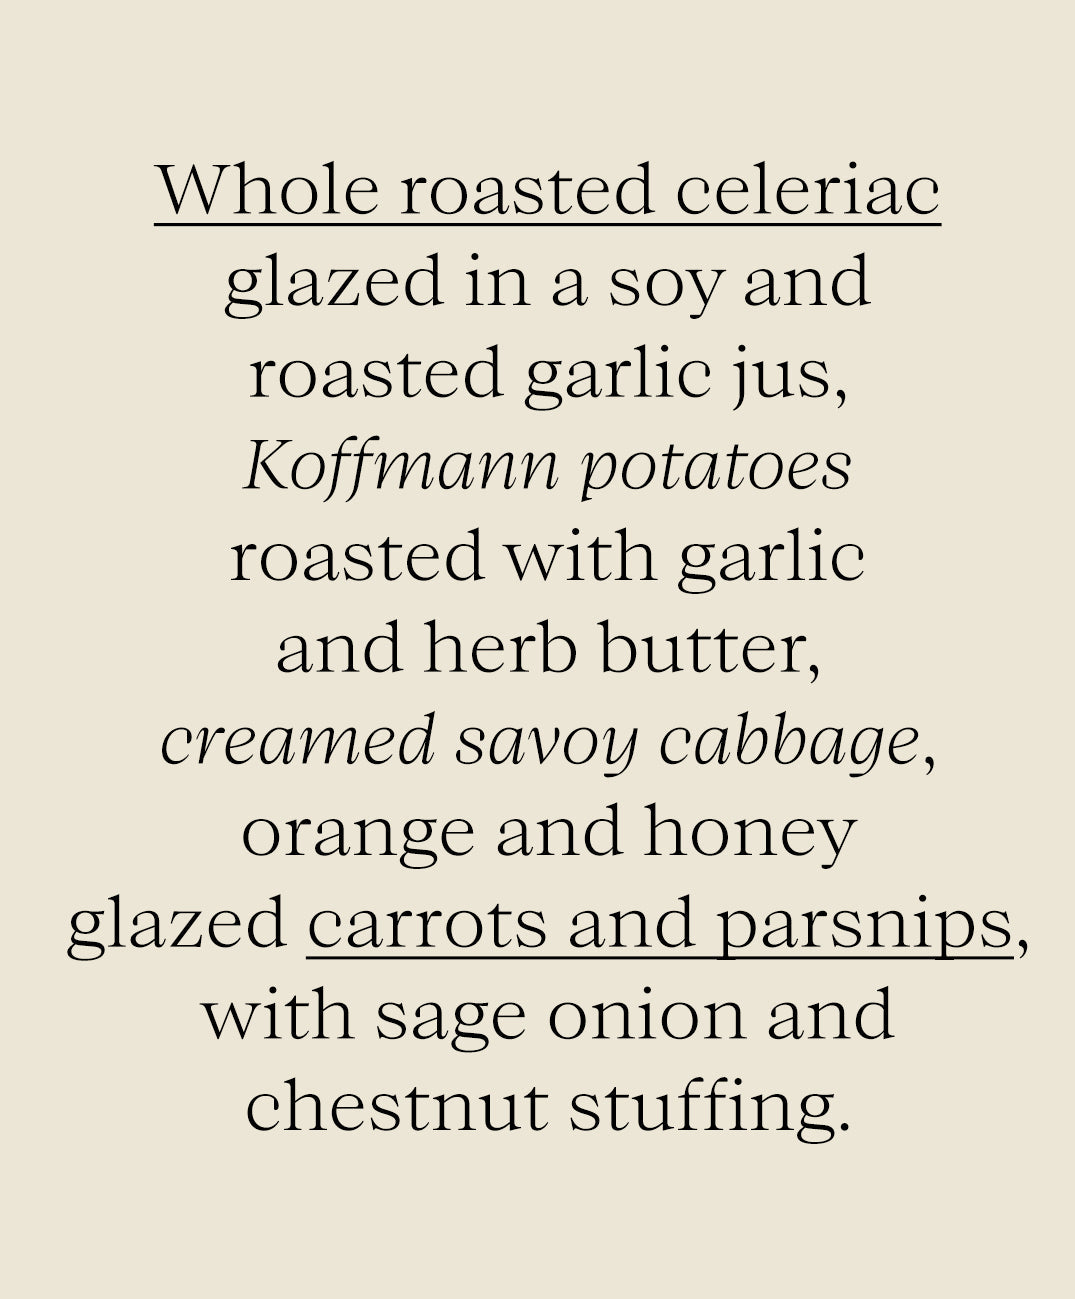 The Sunday Roast Collection - Truffle & Garlic Glazed Whole Roasted Celeriac - Naked Wines Offer